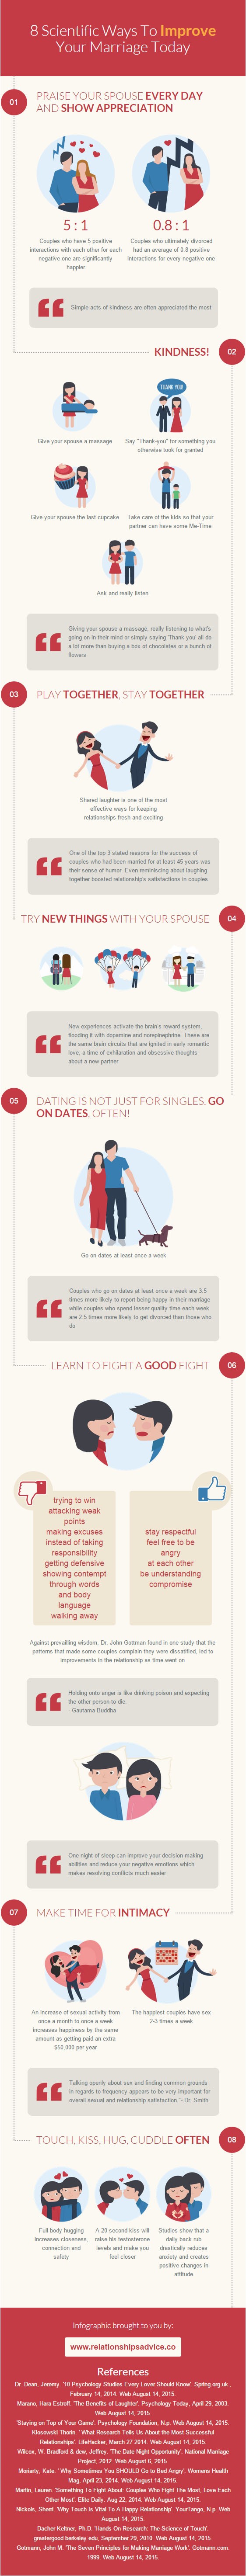 Kaj so skrivnosti srečnega zakona? (Infografika: relationshipsadvice.co)